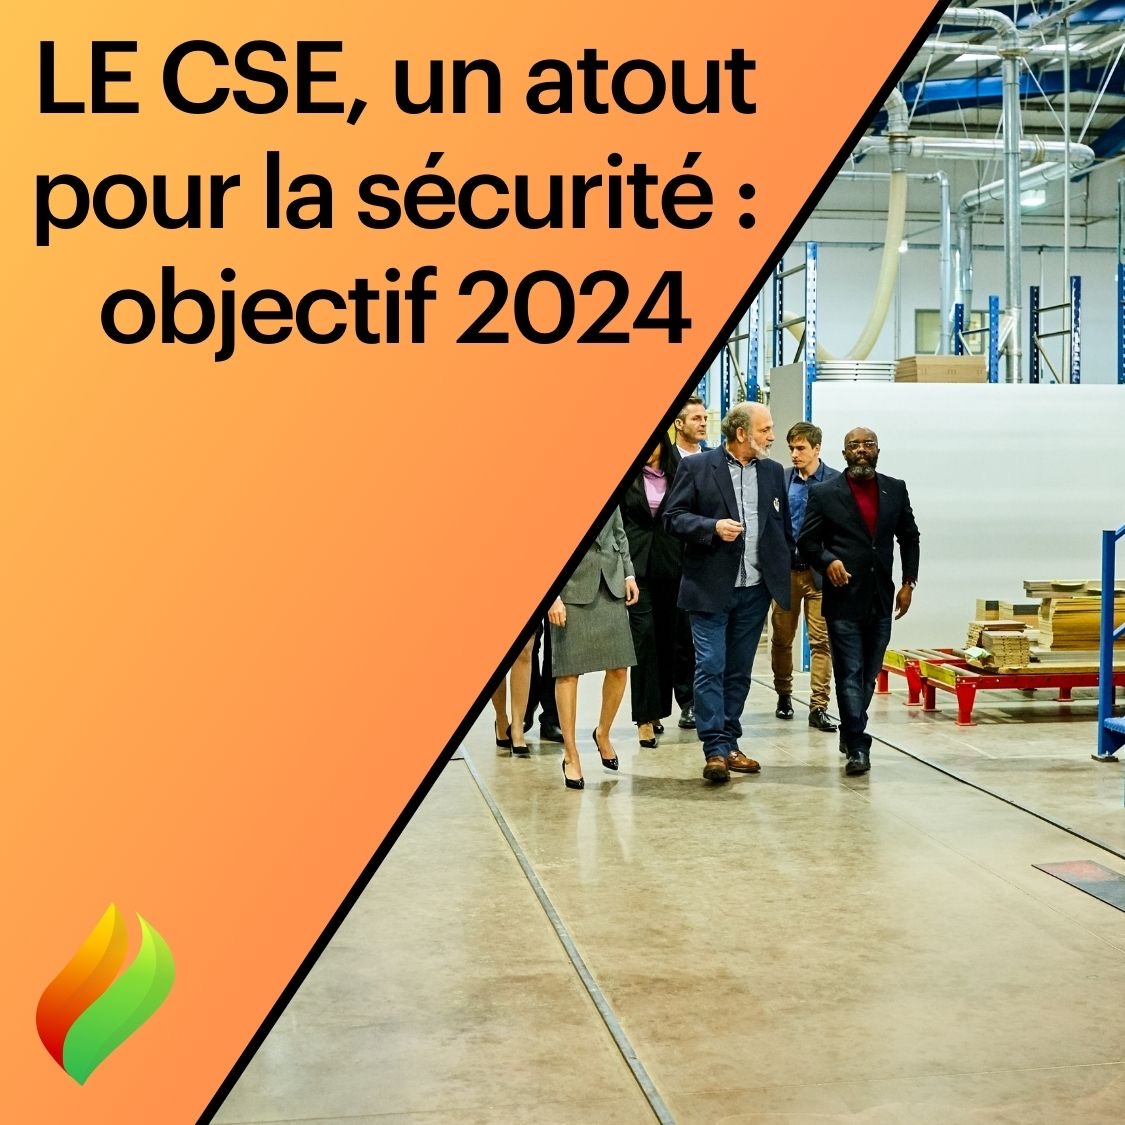 Le CSE un atout pour la sécurité : objectif 2024